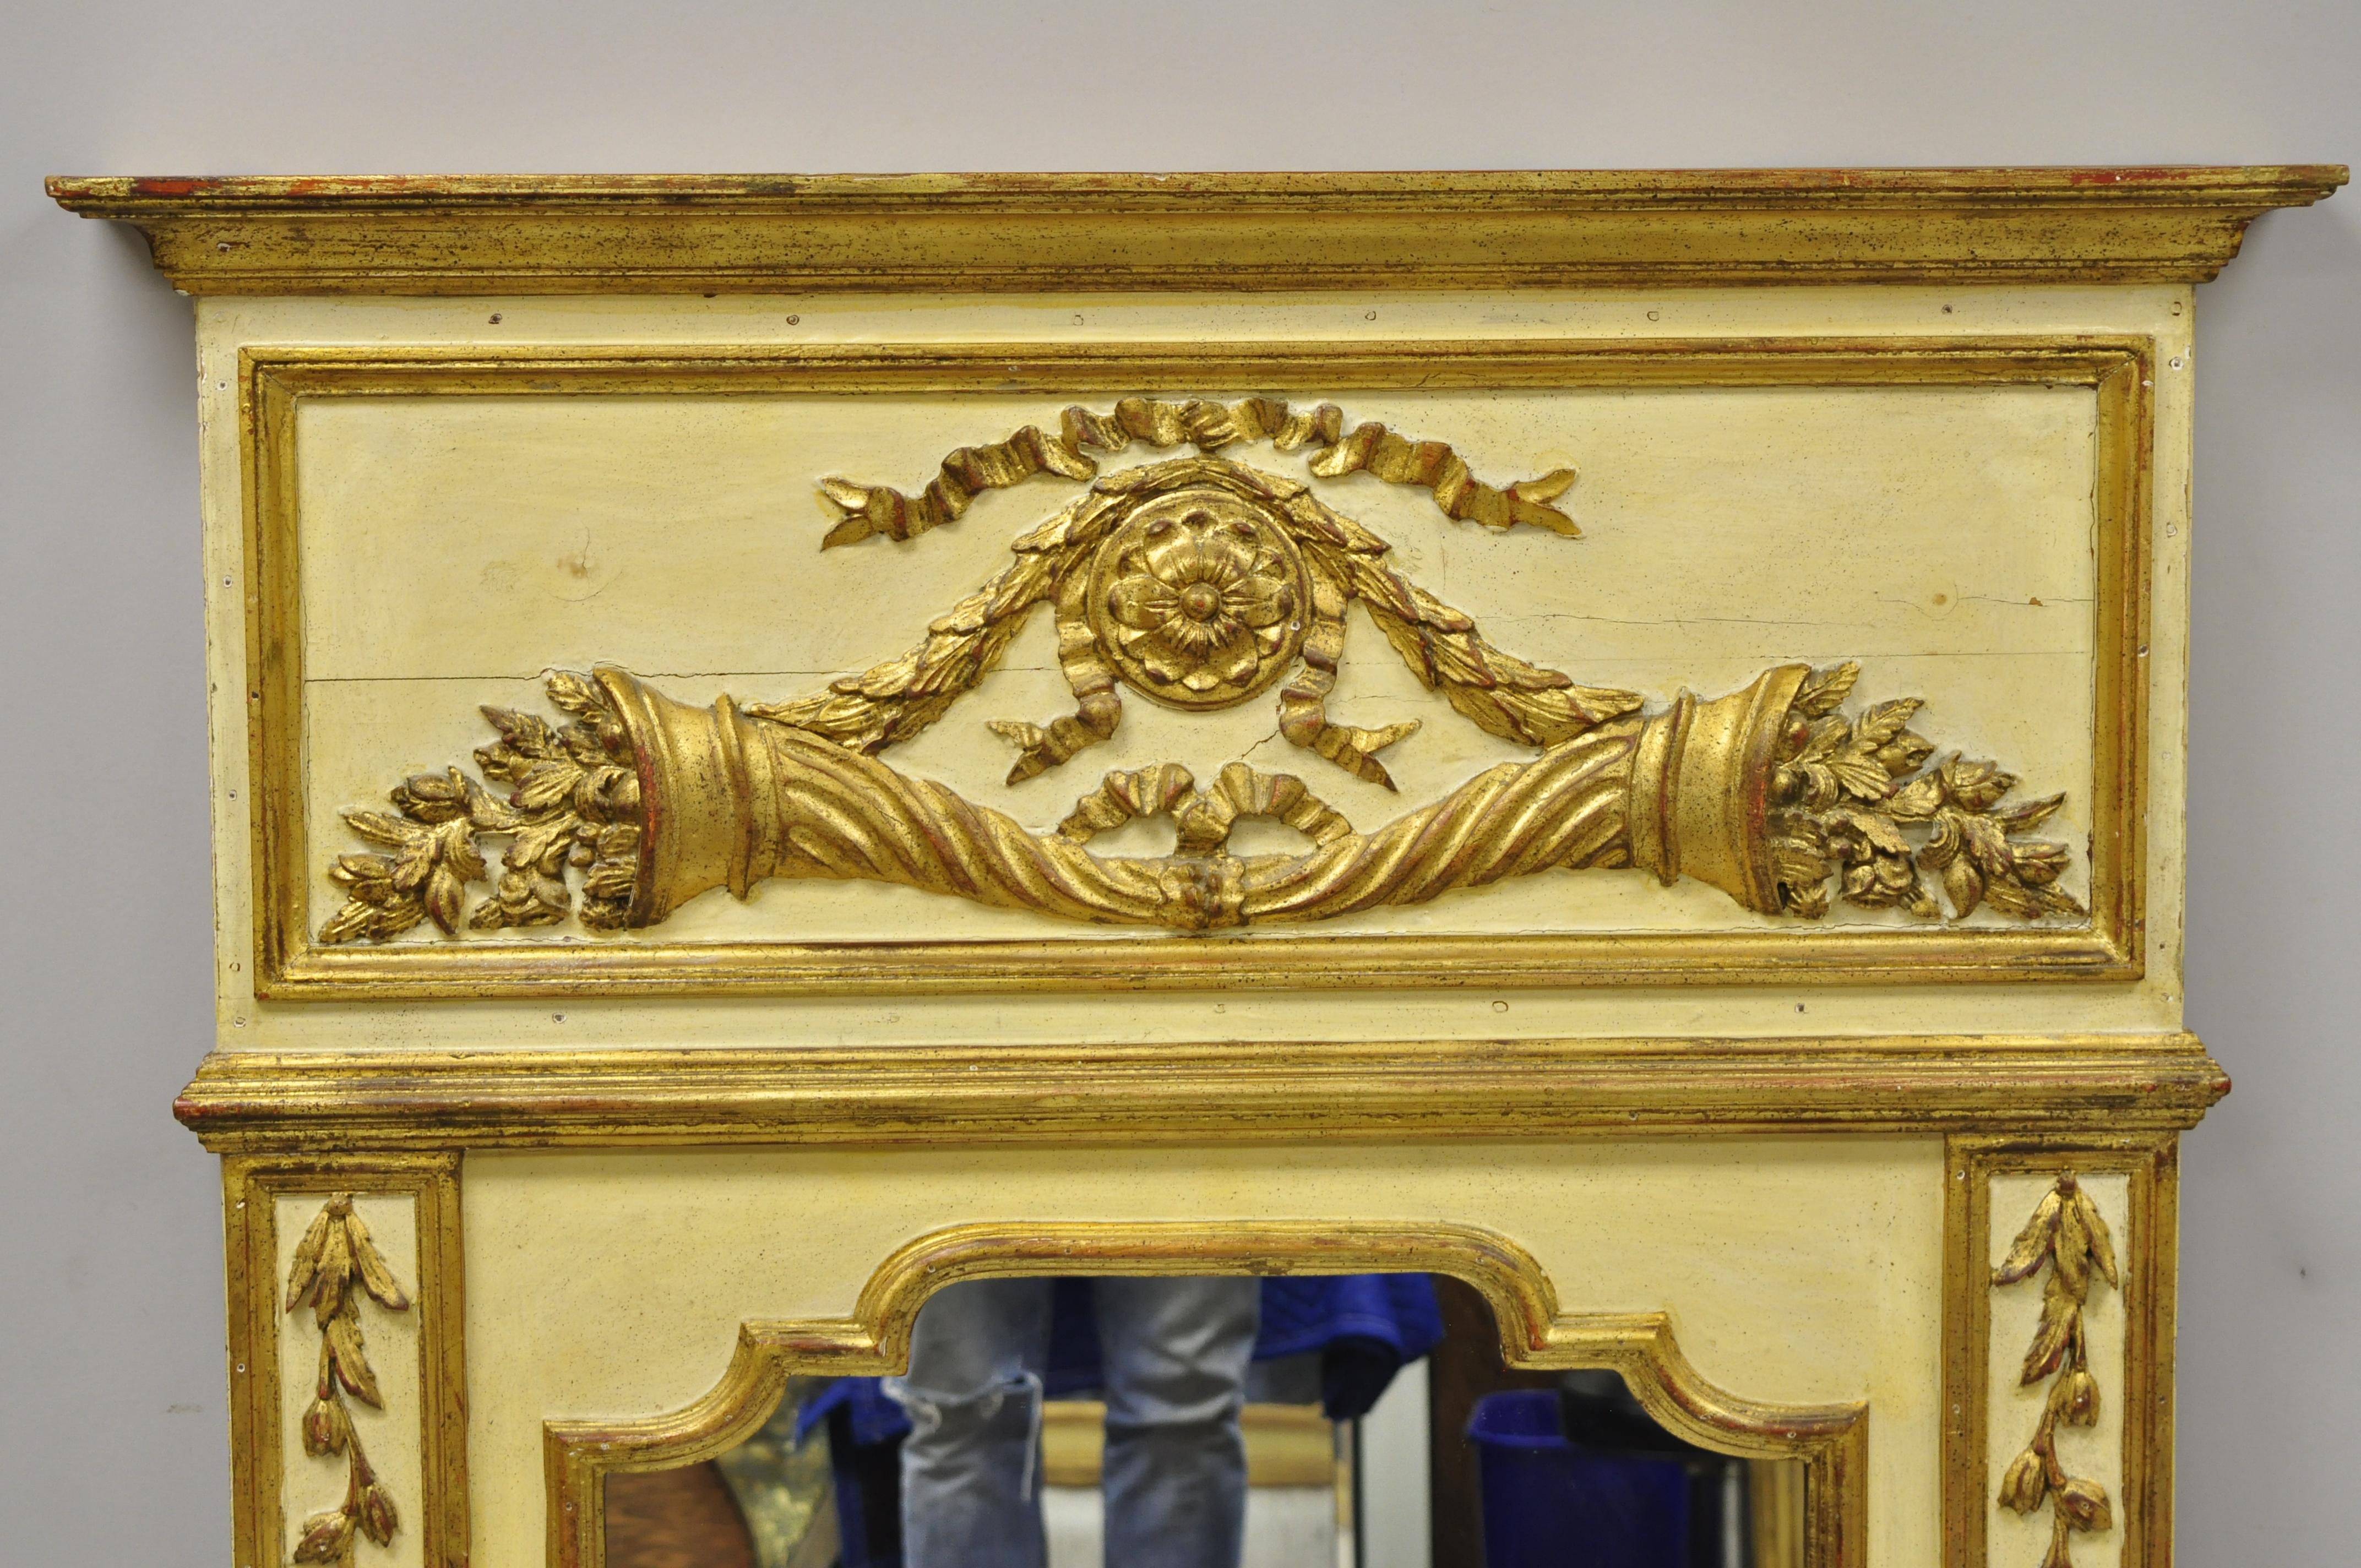 Antique miroir mural italien néoclassique en bois doré, grand trumeau 58 x 40. L'article présente un cadre en bois massif, une finition vieillie, des détails joliment sculptés, un cachet d'origine, un artisanat italien de qualité, un style et une